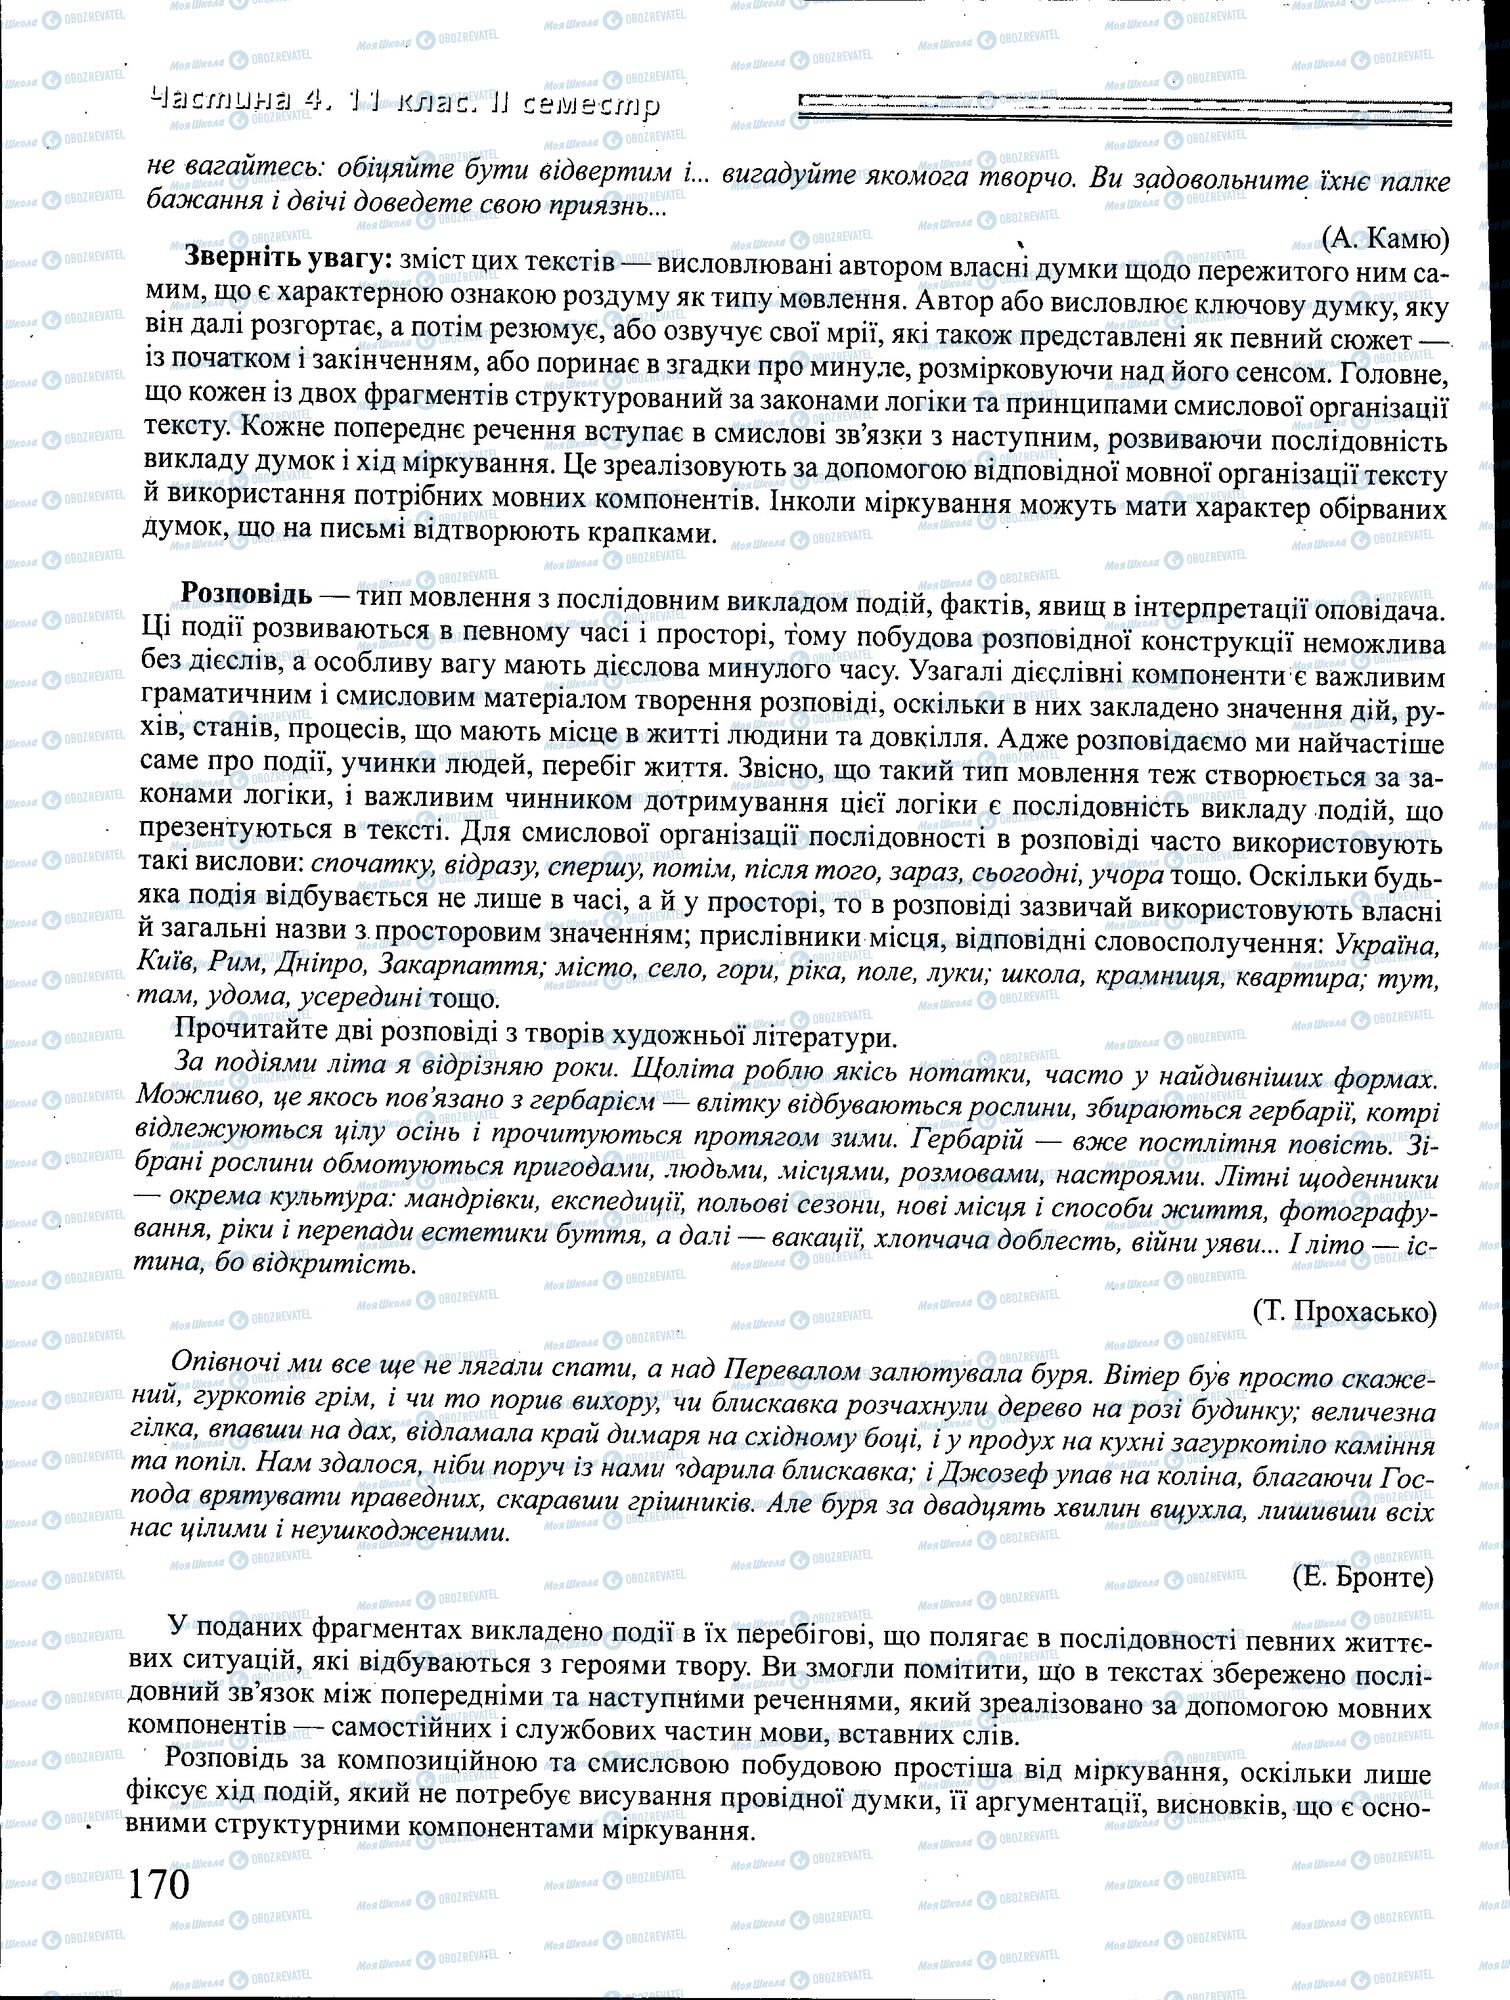 ДПА Укр мова 4 класс страница 170